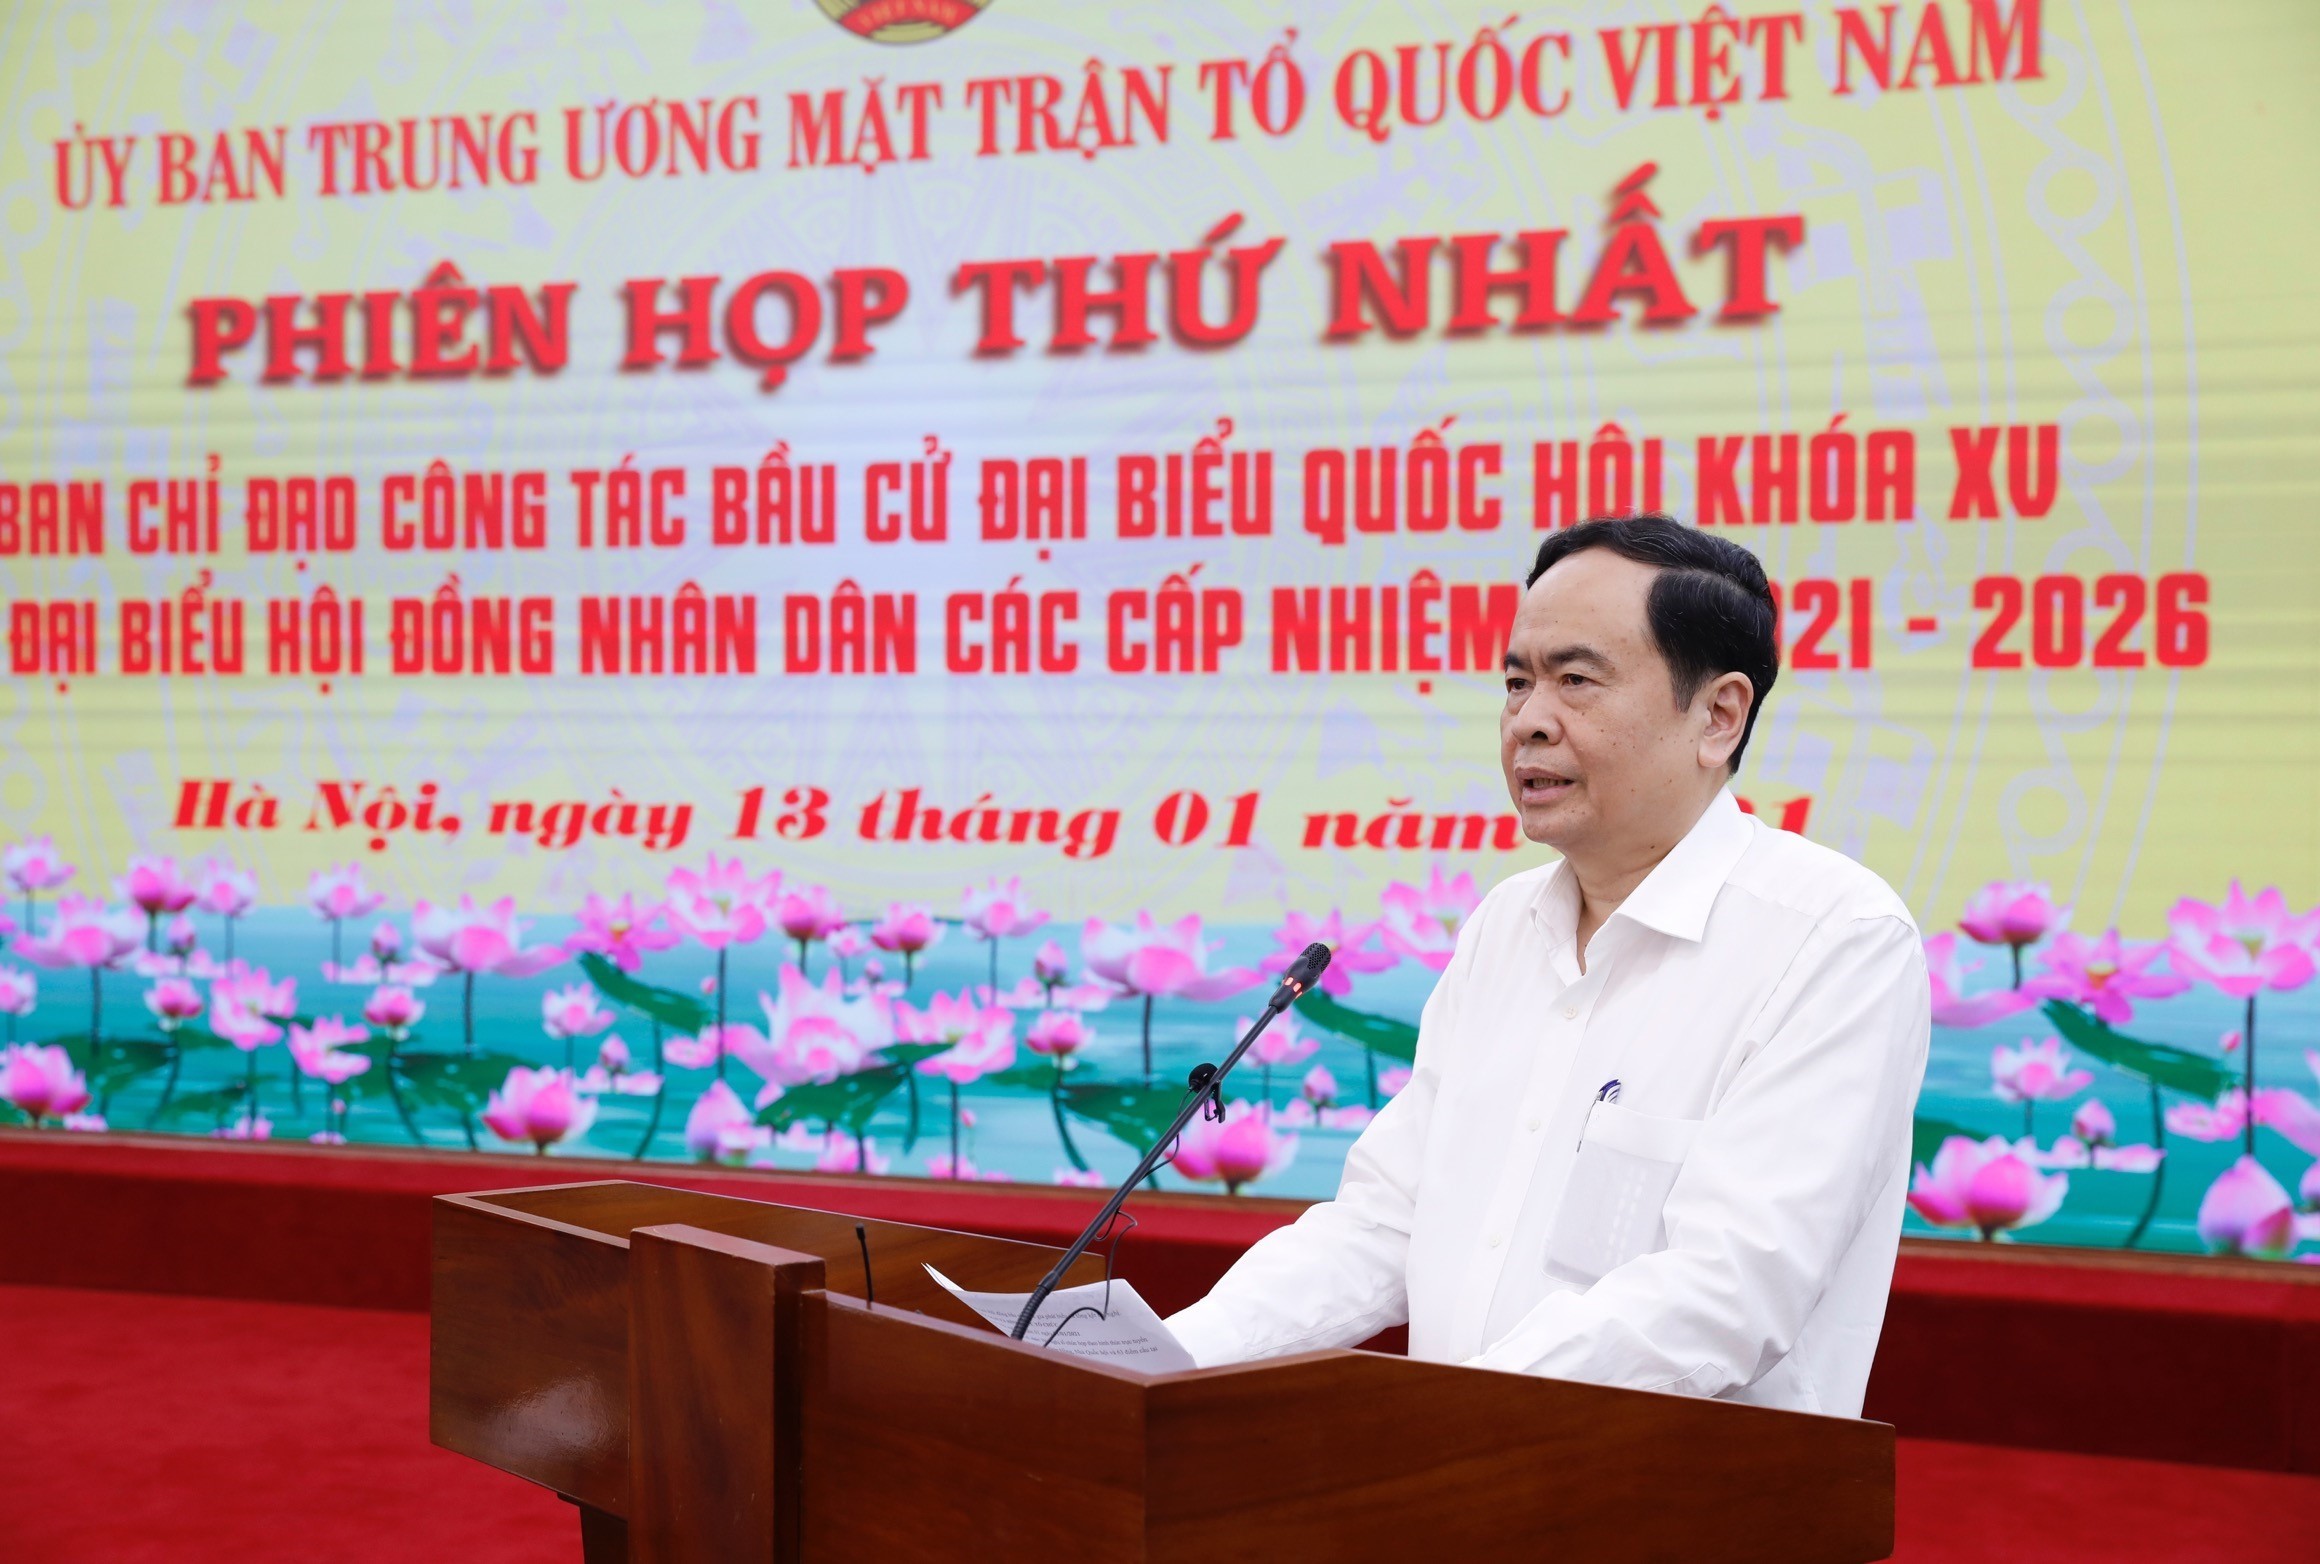 Chủ tịch Ủy ban Trung ương MTTQ Việt Nam Trần Thanh Mẫn chủ trì cuộc họp. Ảnh: DƯƠNG GIANG